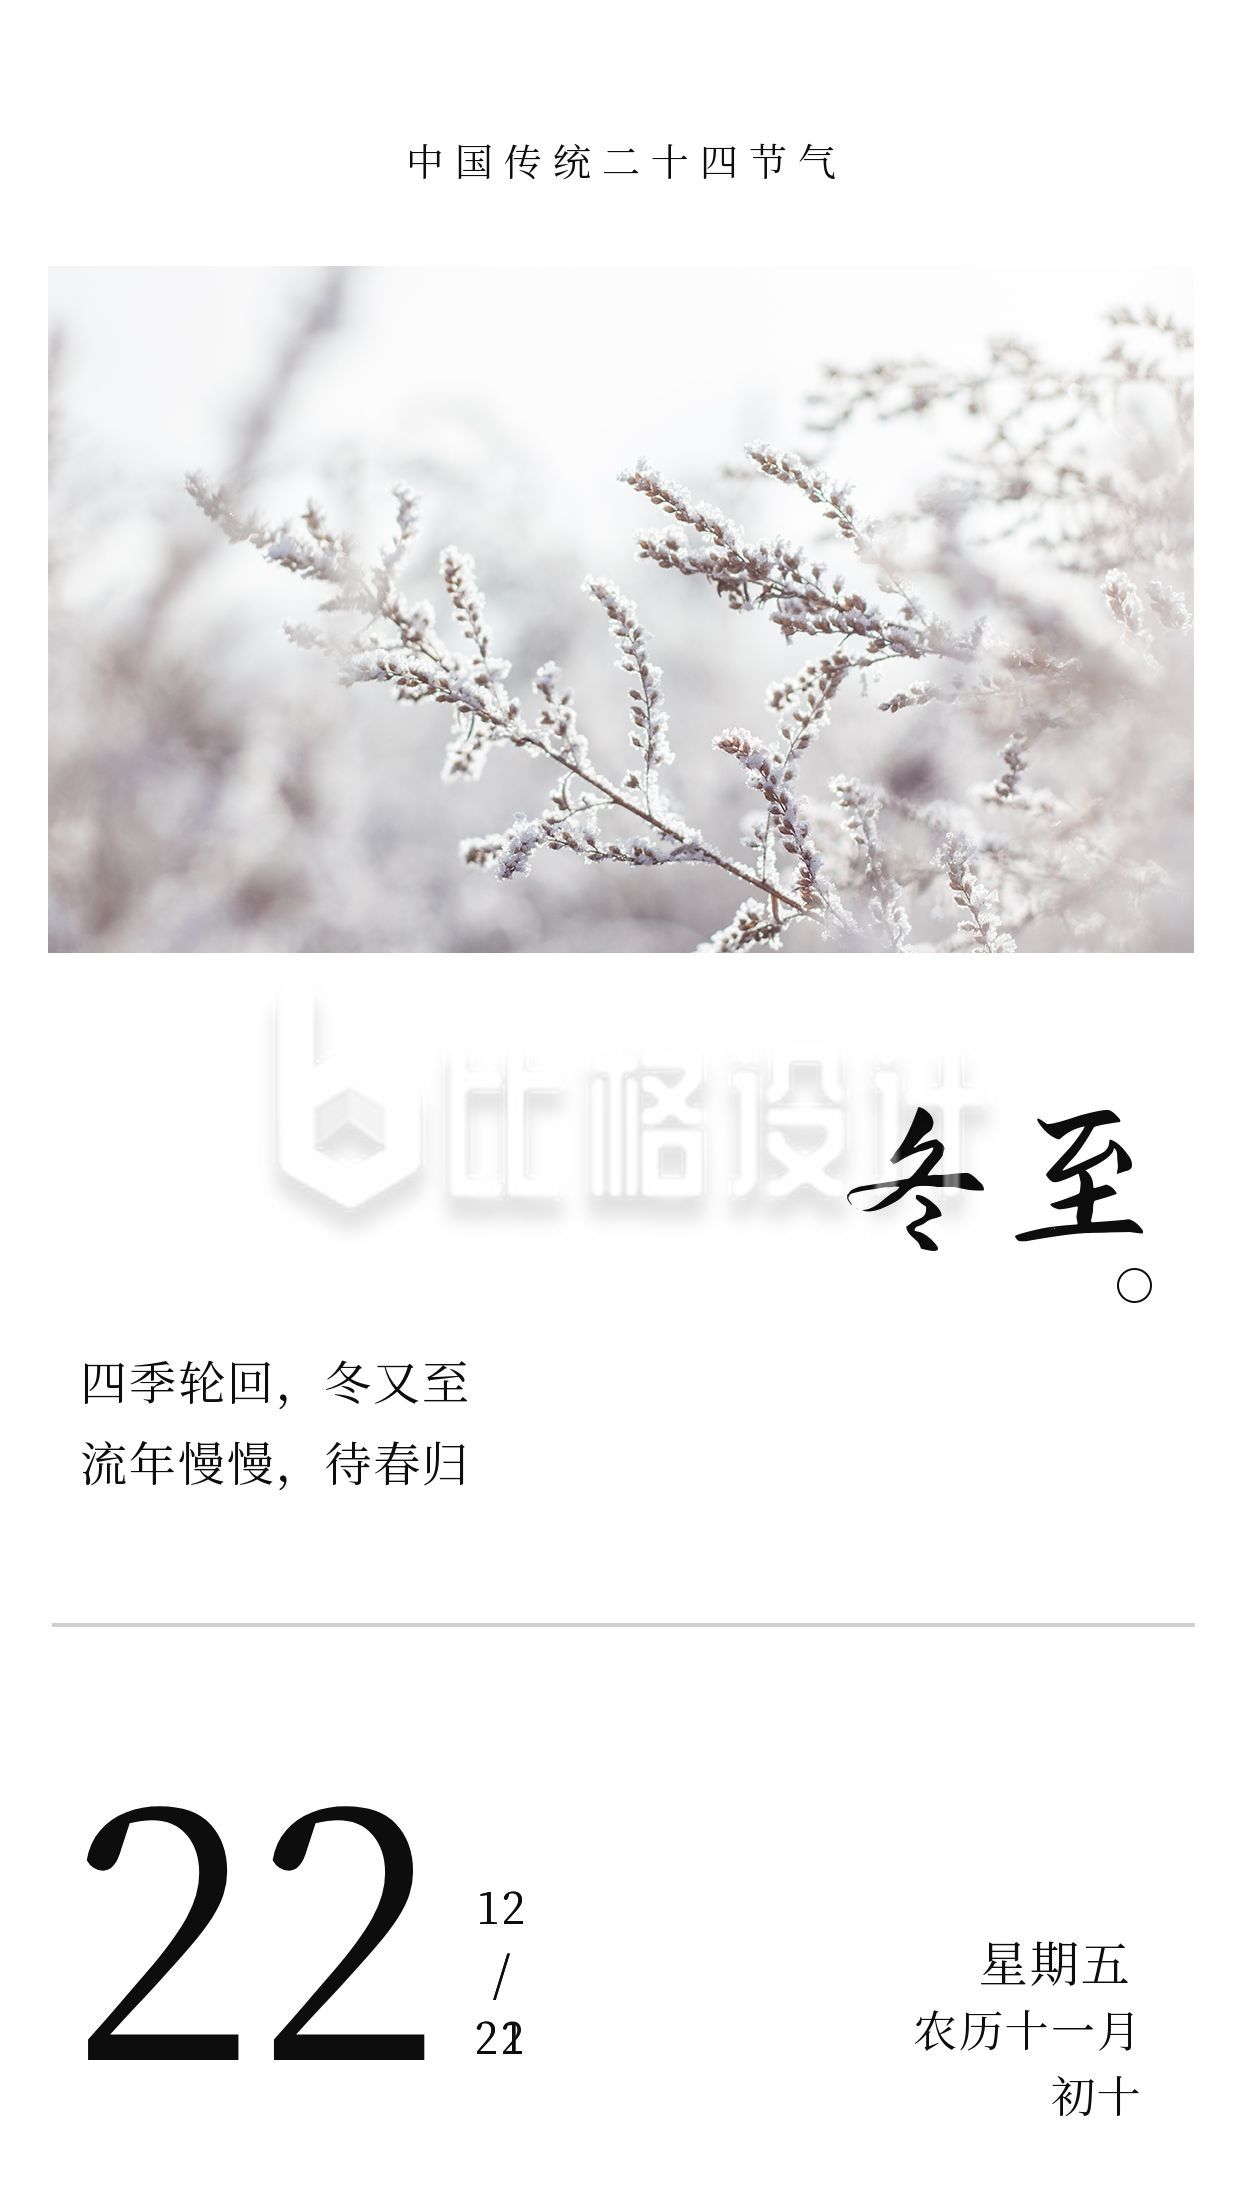 中国传统二十四节气冬至立冬白色冬景竖版配图